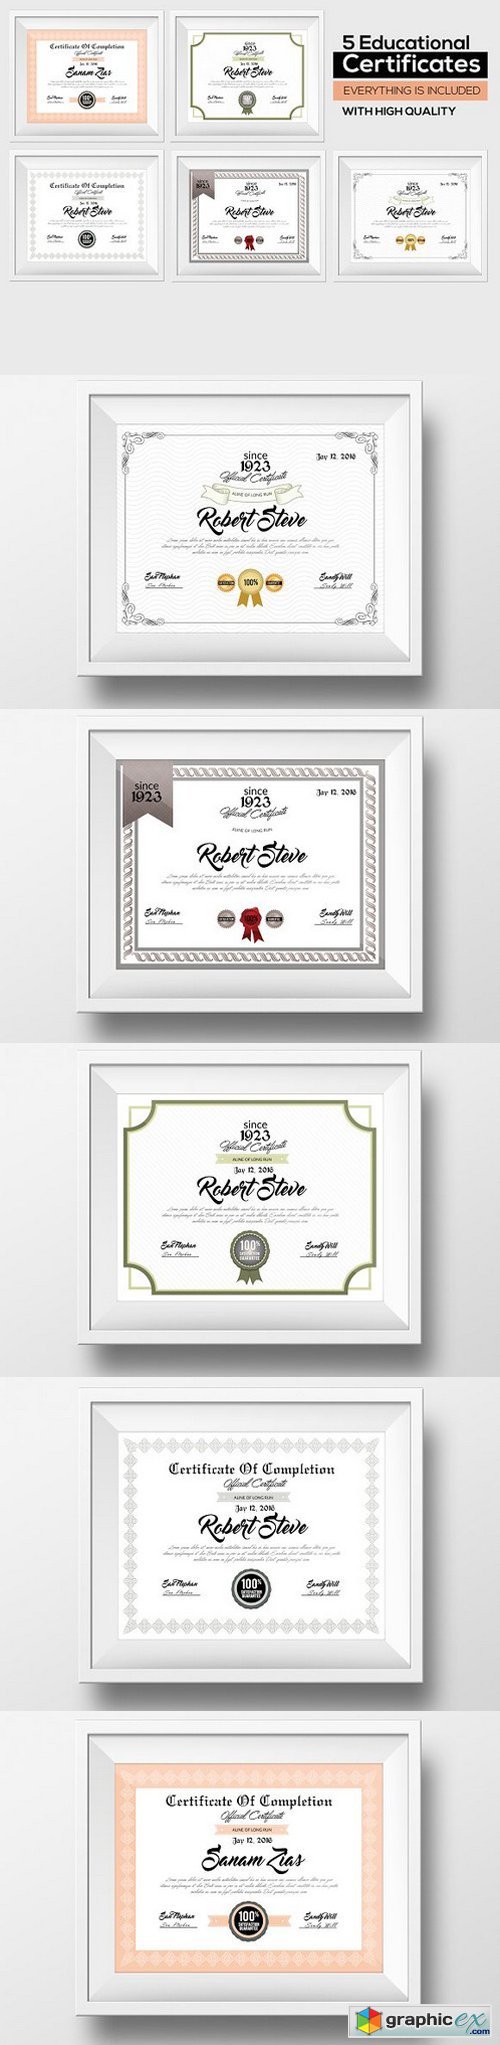 5 Certificate & Diploma Bundle